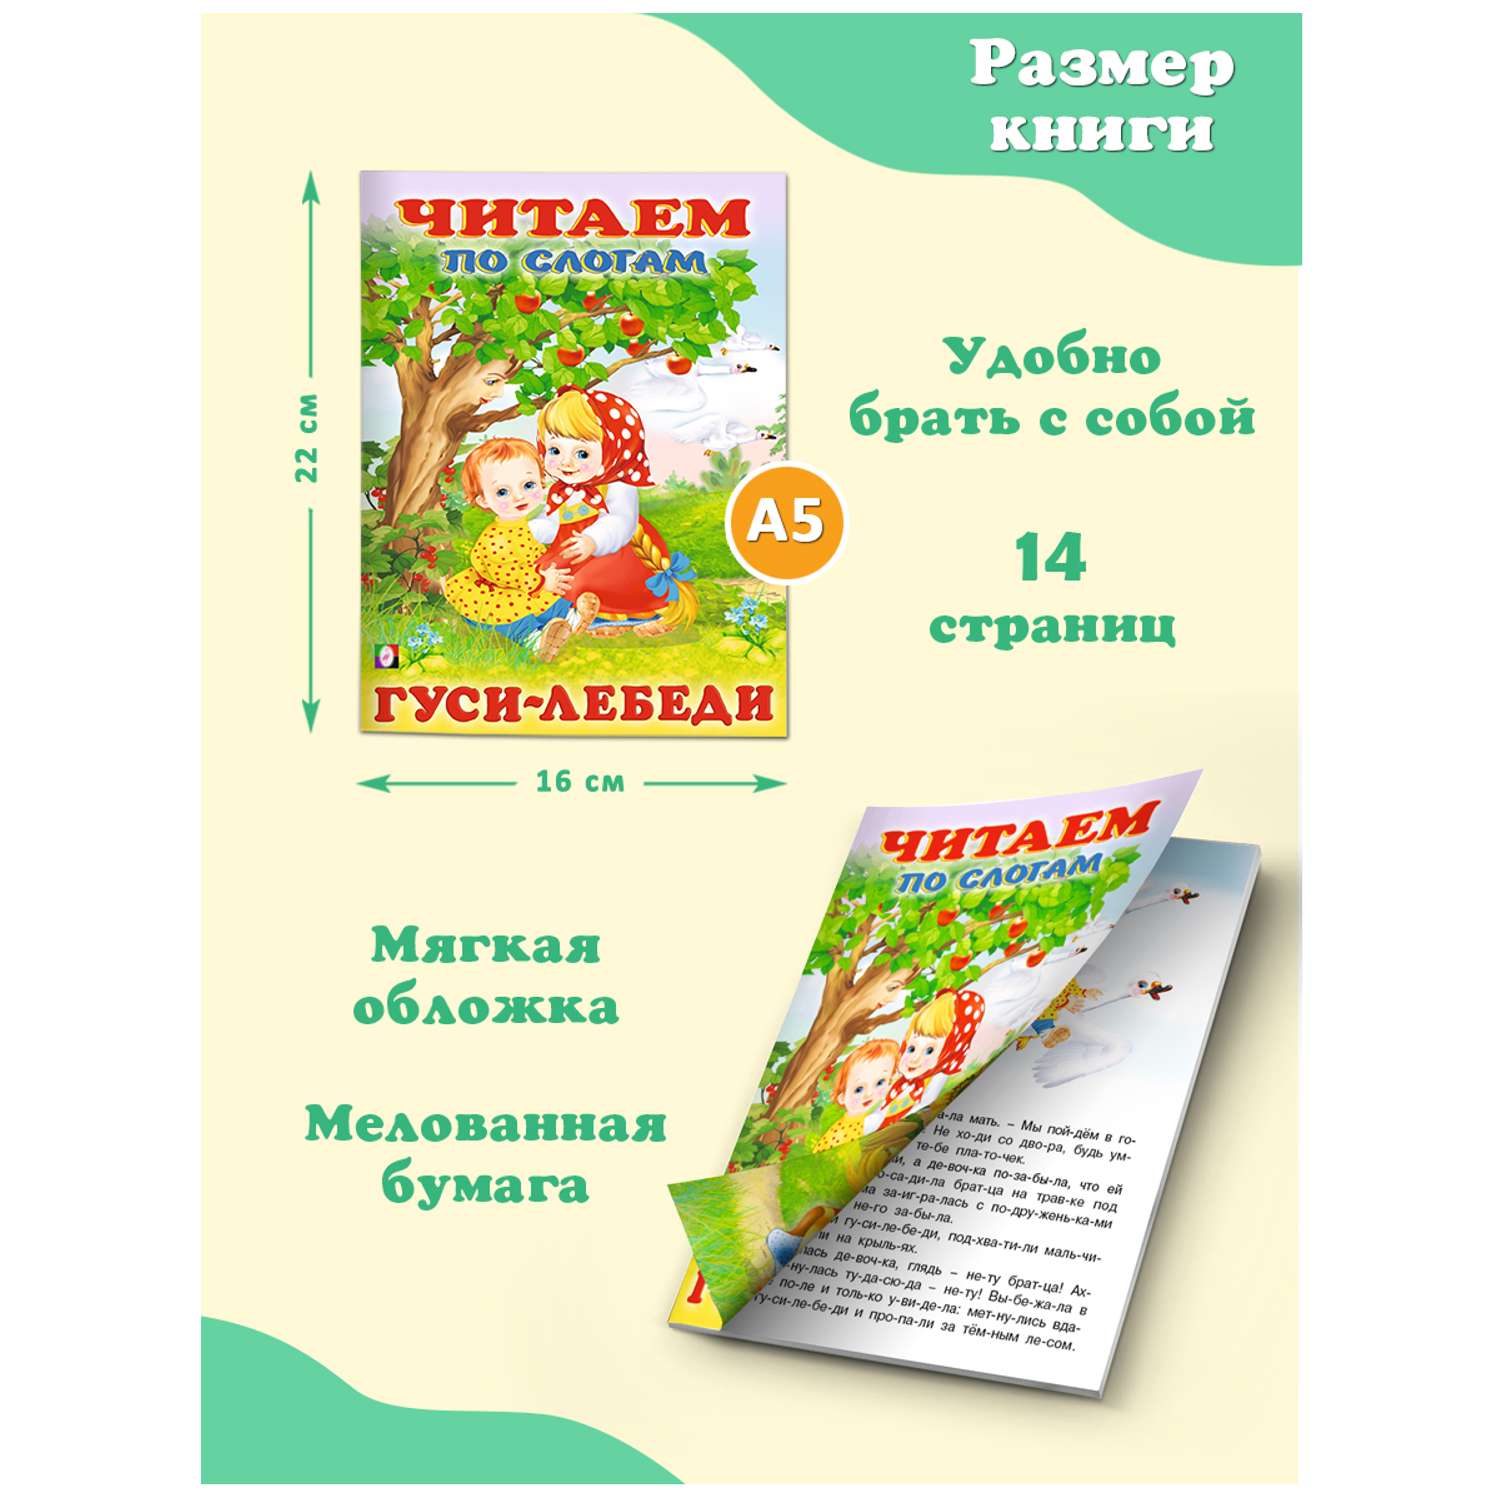 Комплект книг Фламинго Читаем по слогам Книги для малышей Русские народные и зарубежные сказки набор из 9 шт - фото 11